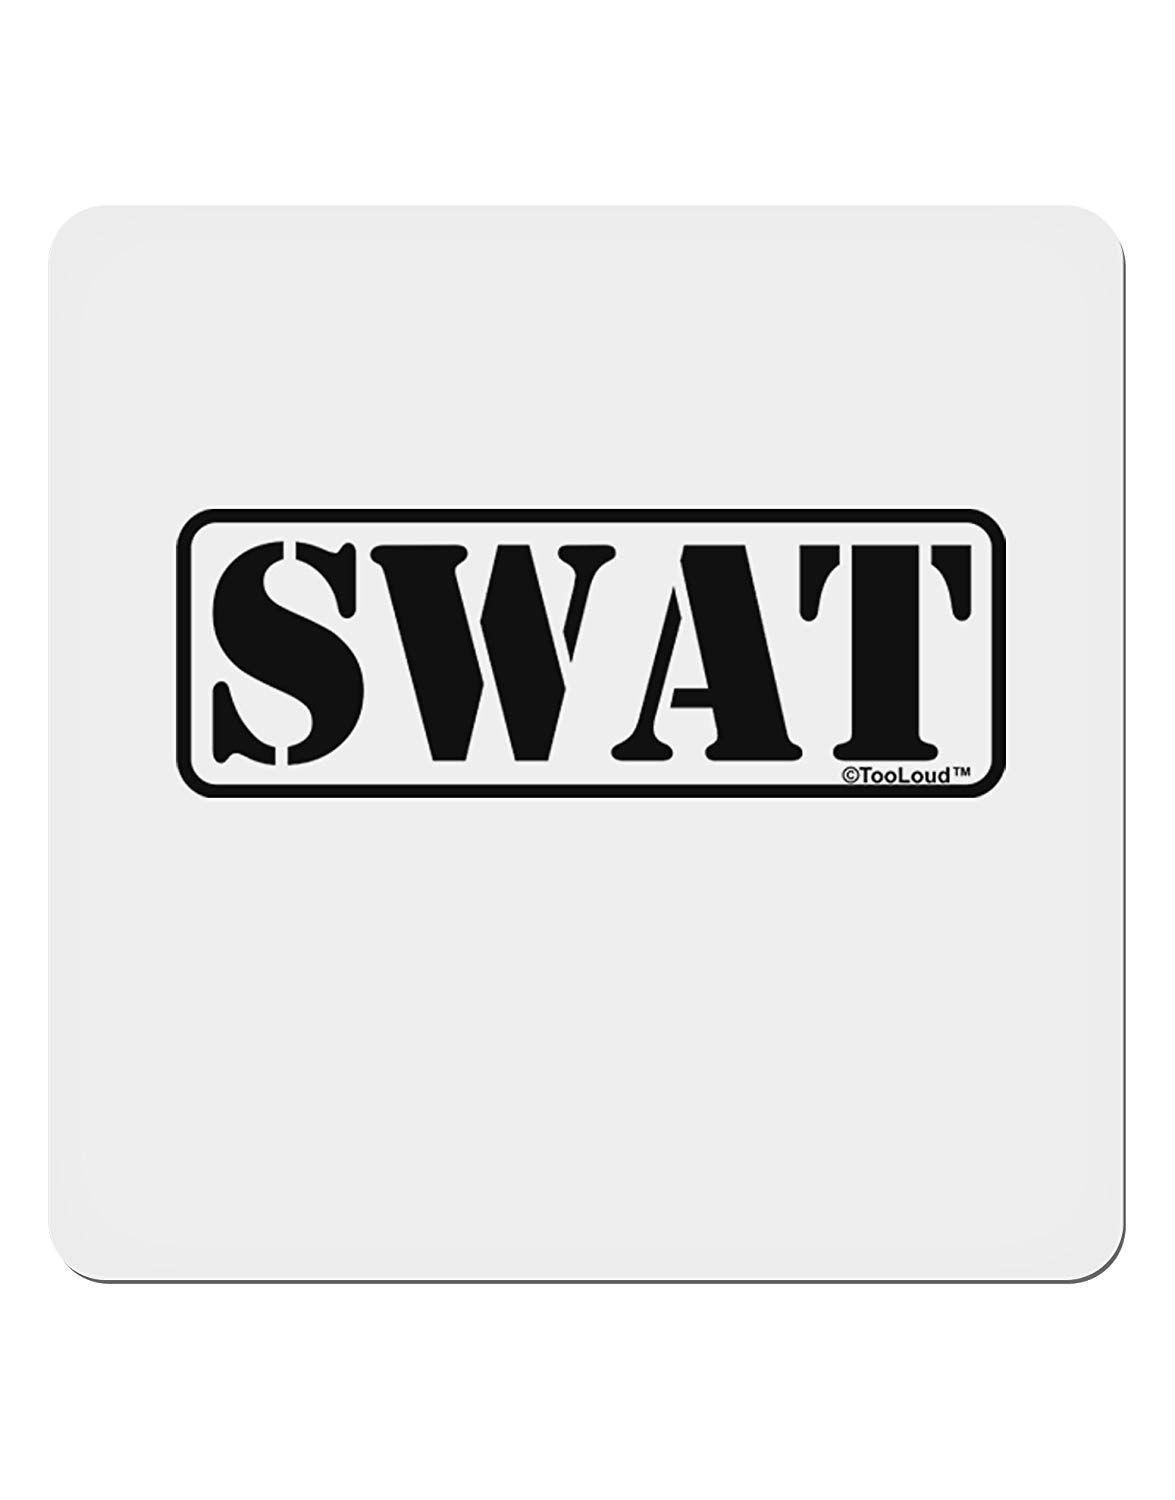 Swat Logo - TooLoud SWAT Team Logo 4x4 Square Sticker